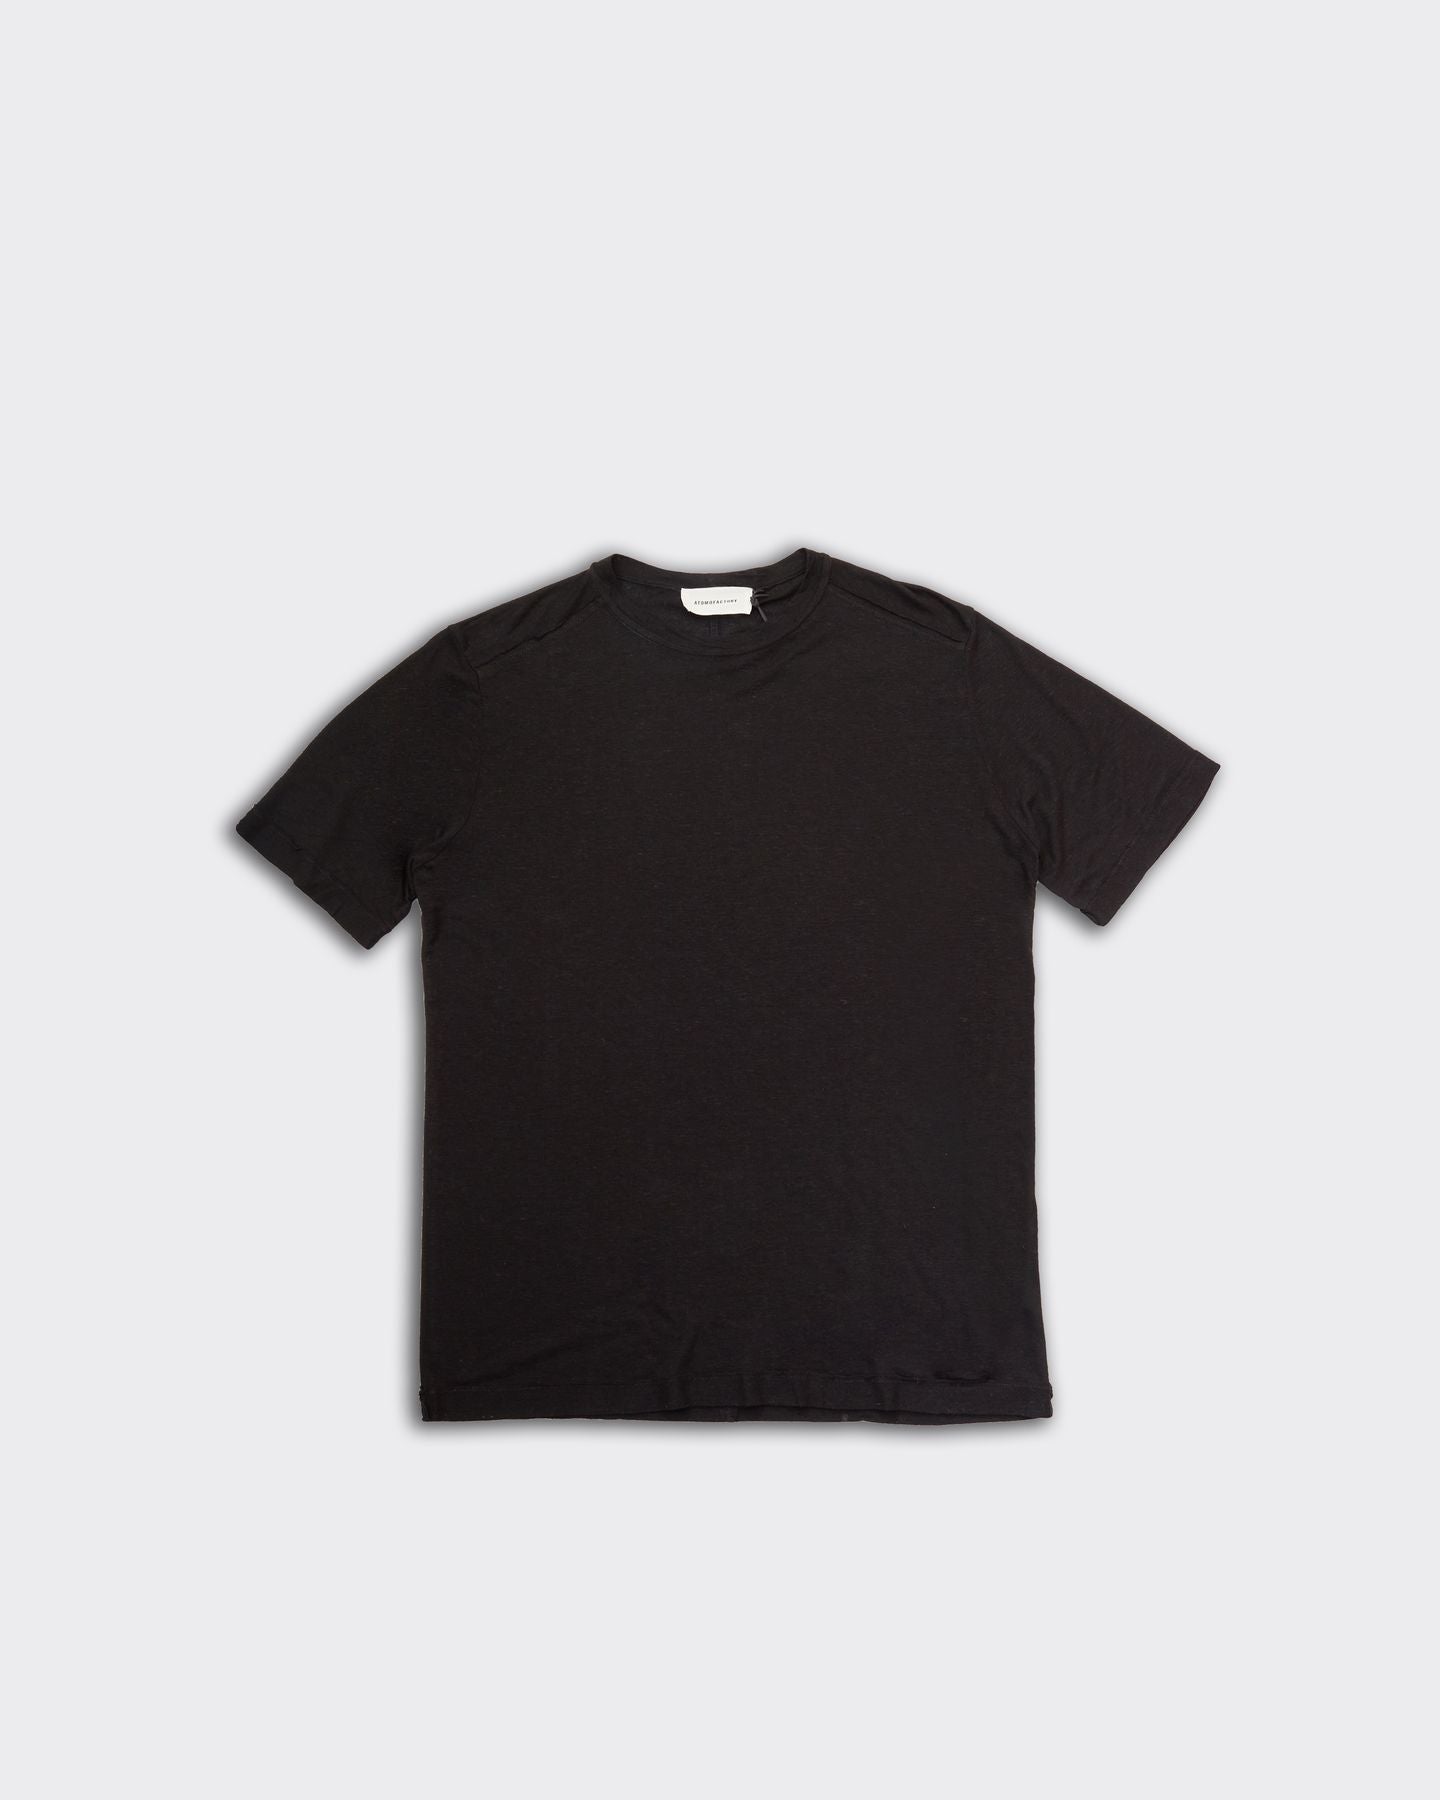 Black Transparency T-Shirt